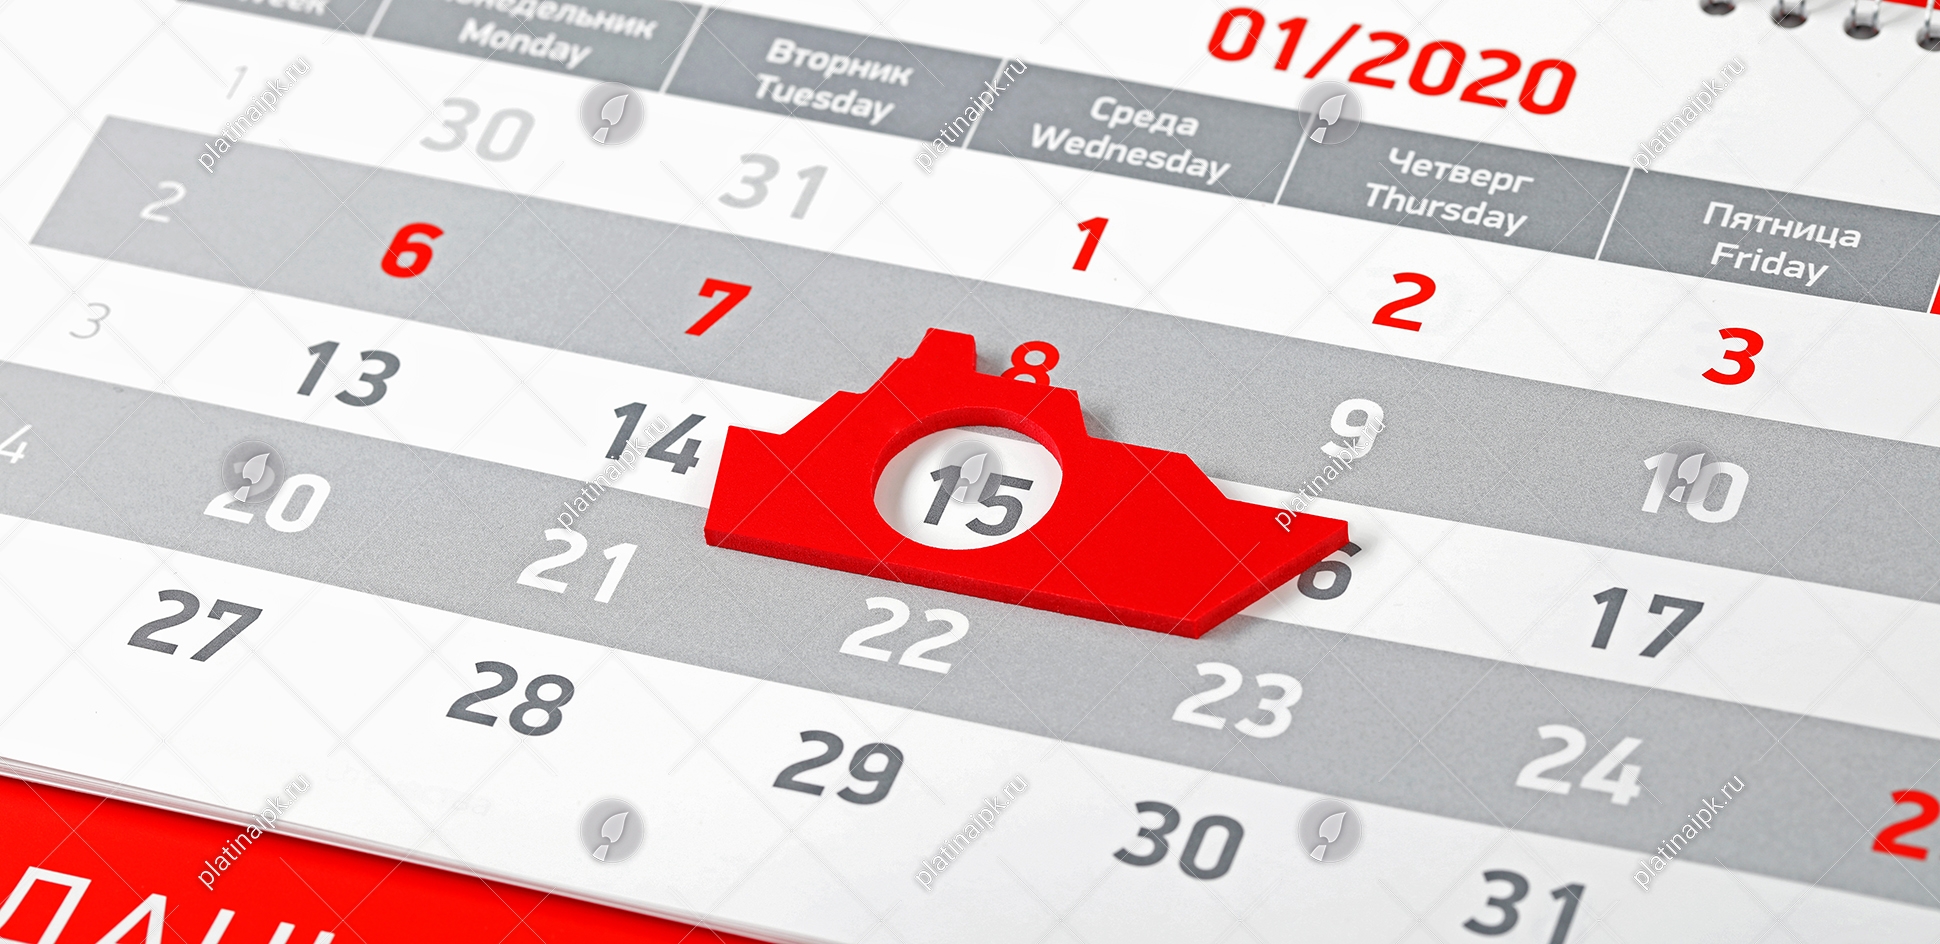 Корпоративный календарь: Созданы побеждать «Объединенная судостроительная  корпорация» — ИПК Platina